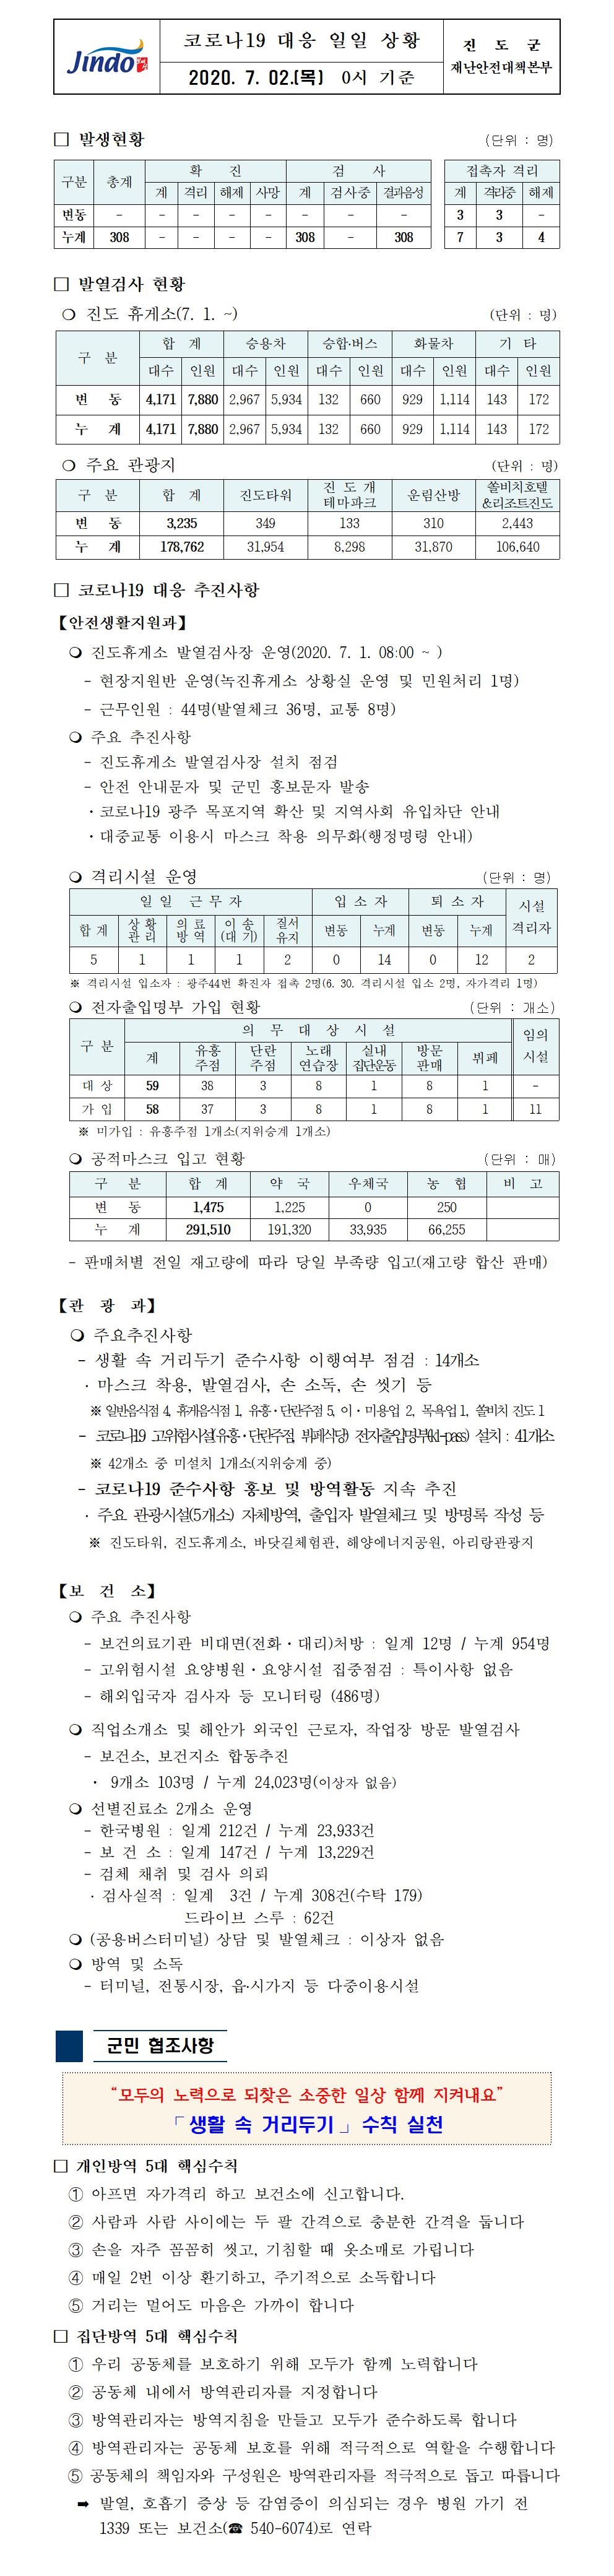 코로나19대응 일일 상황 보고(7월 2일 0시 기준) 첨부#1